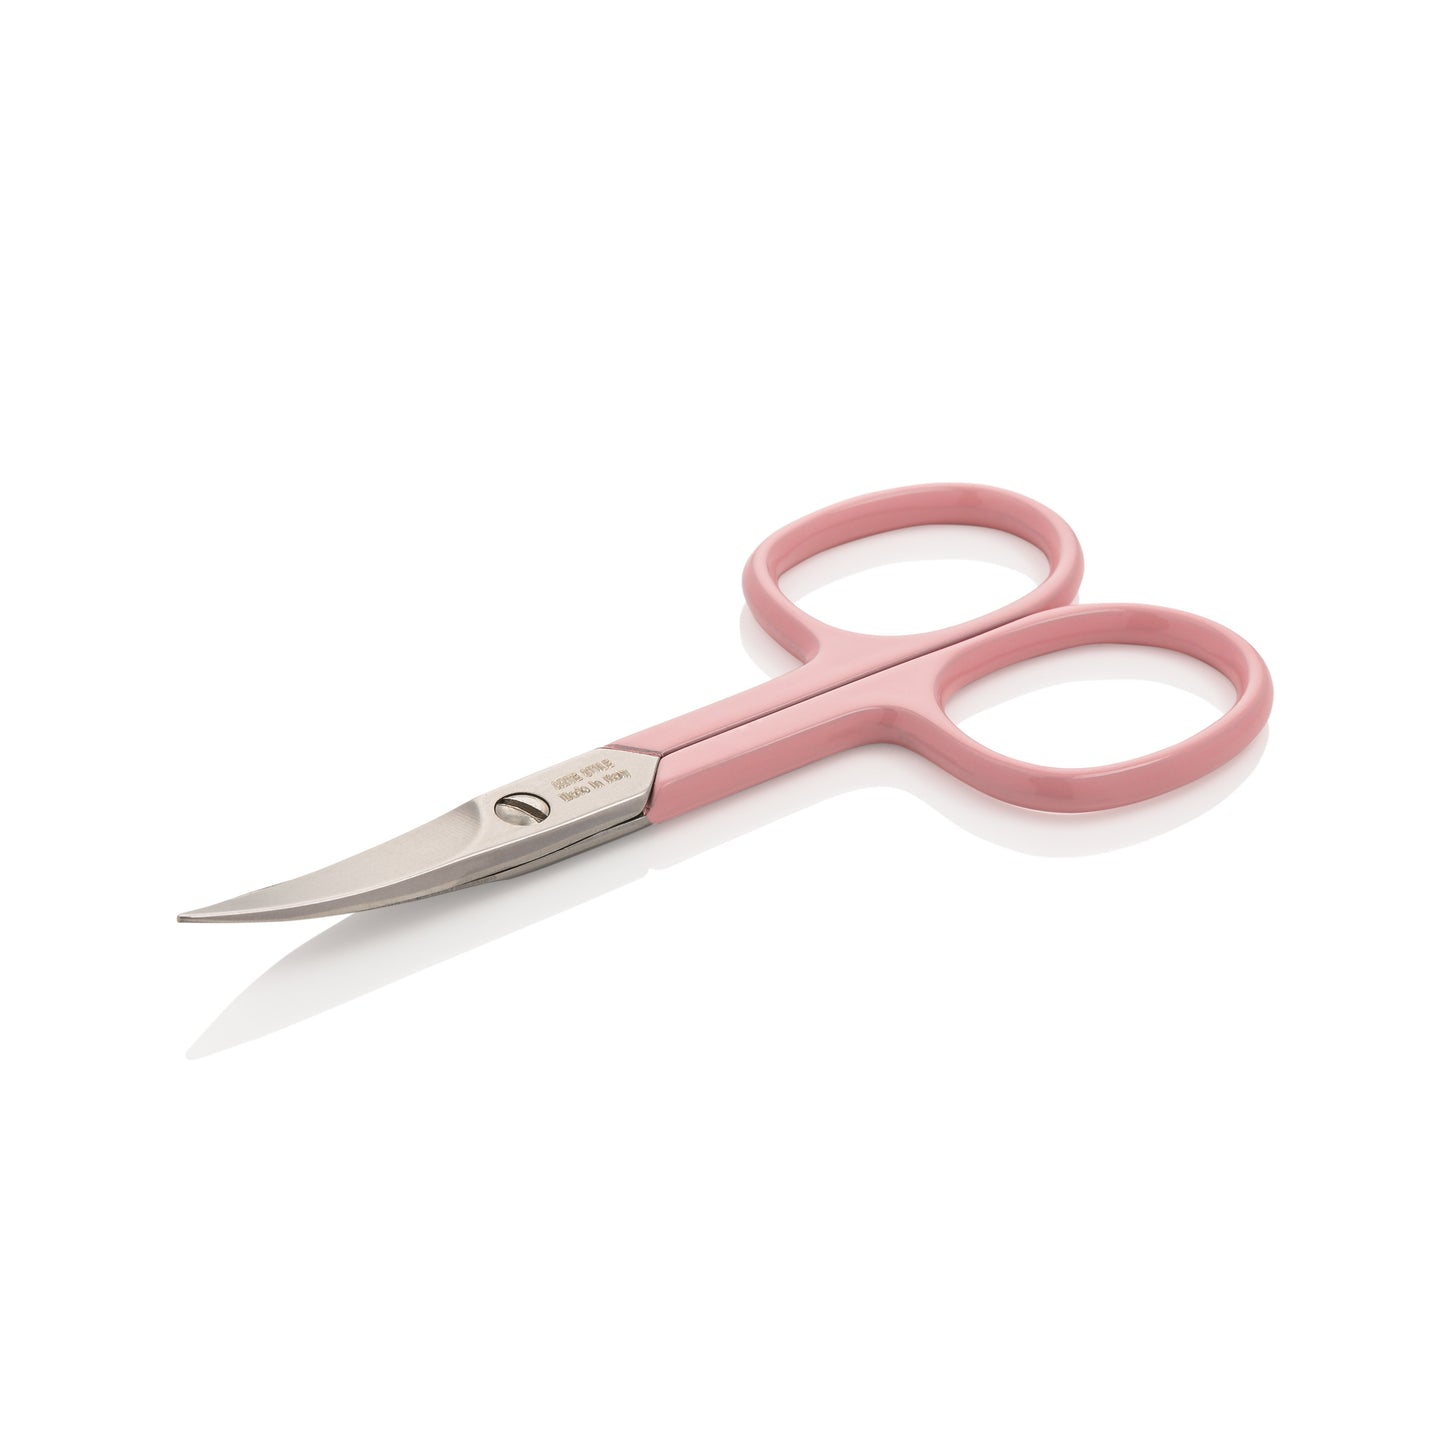 Nail Scissors in Rose - ArteStile Beauty